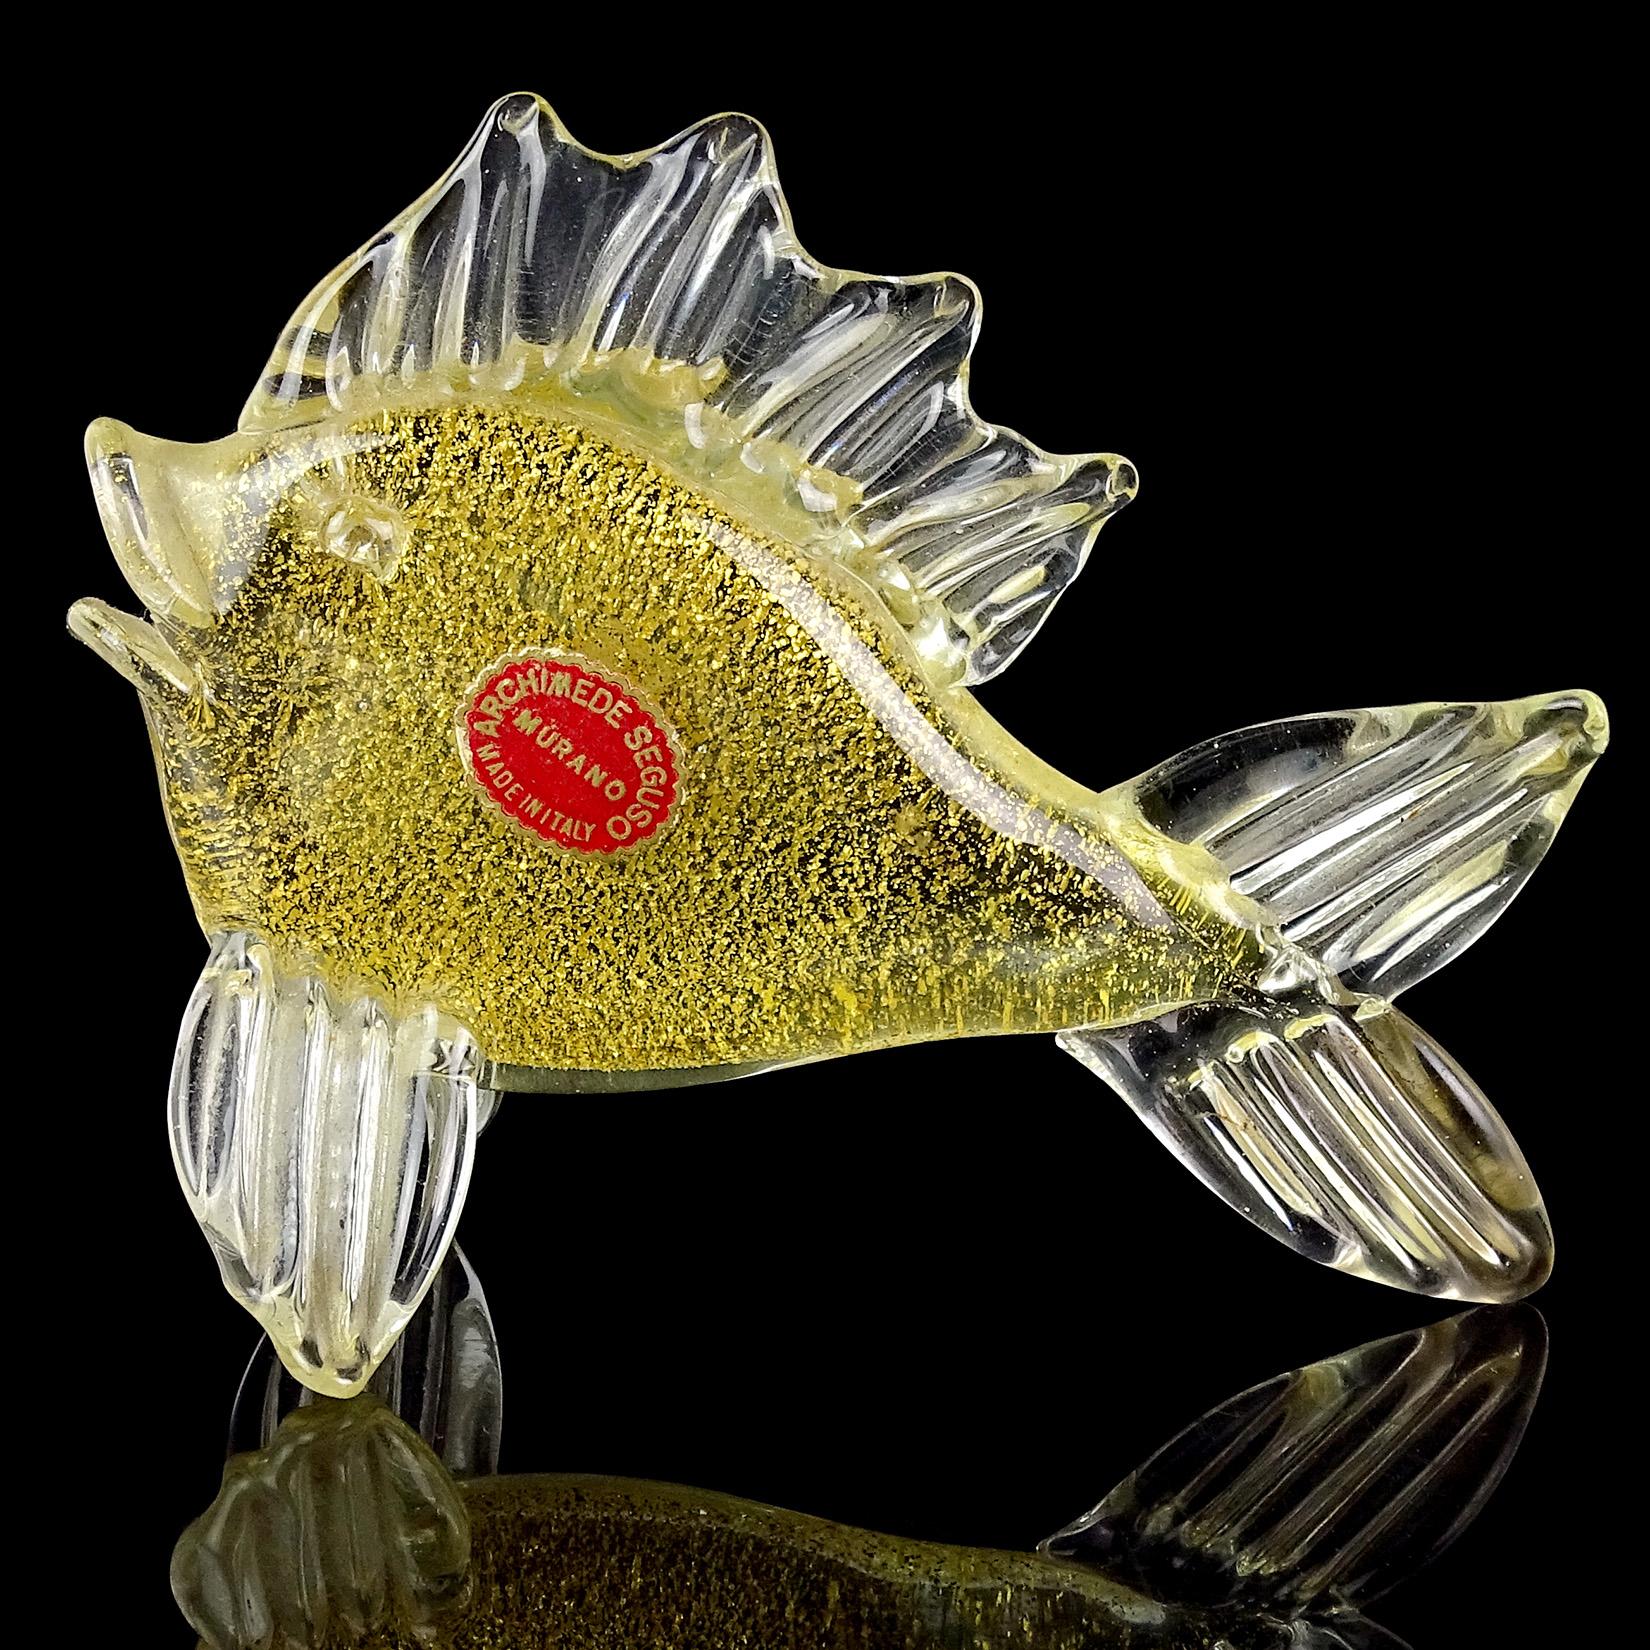 Magnifique sculpture / figurine vintage en verre d'art italien Murano soufflé à la main, transparent et parsemé d'or, représentant un poisson. Documenté au designer Archimede Seguso. La pièce est abondamment recouverte de feuilles d'or, avec